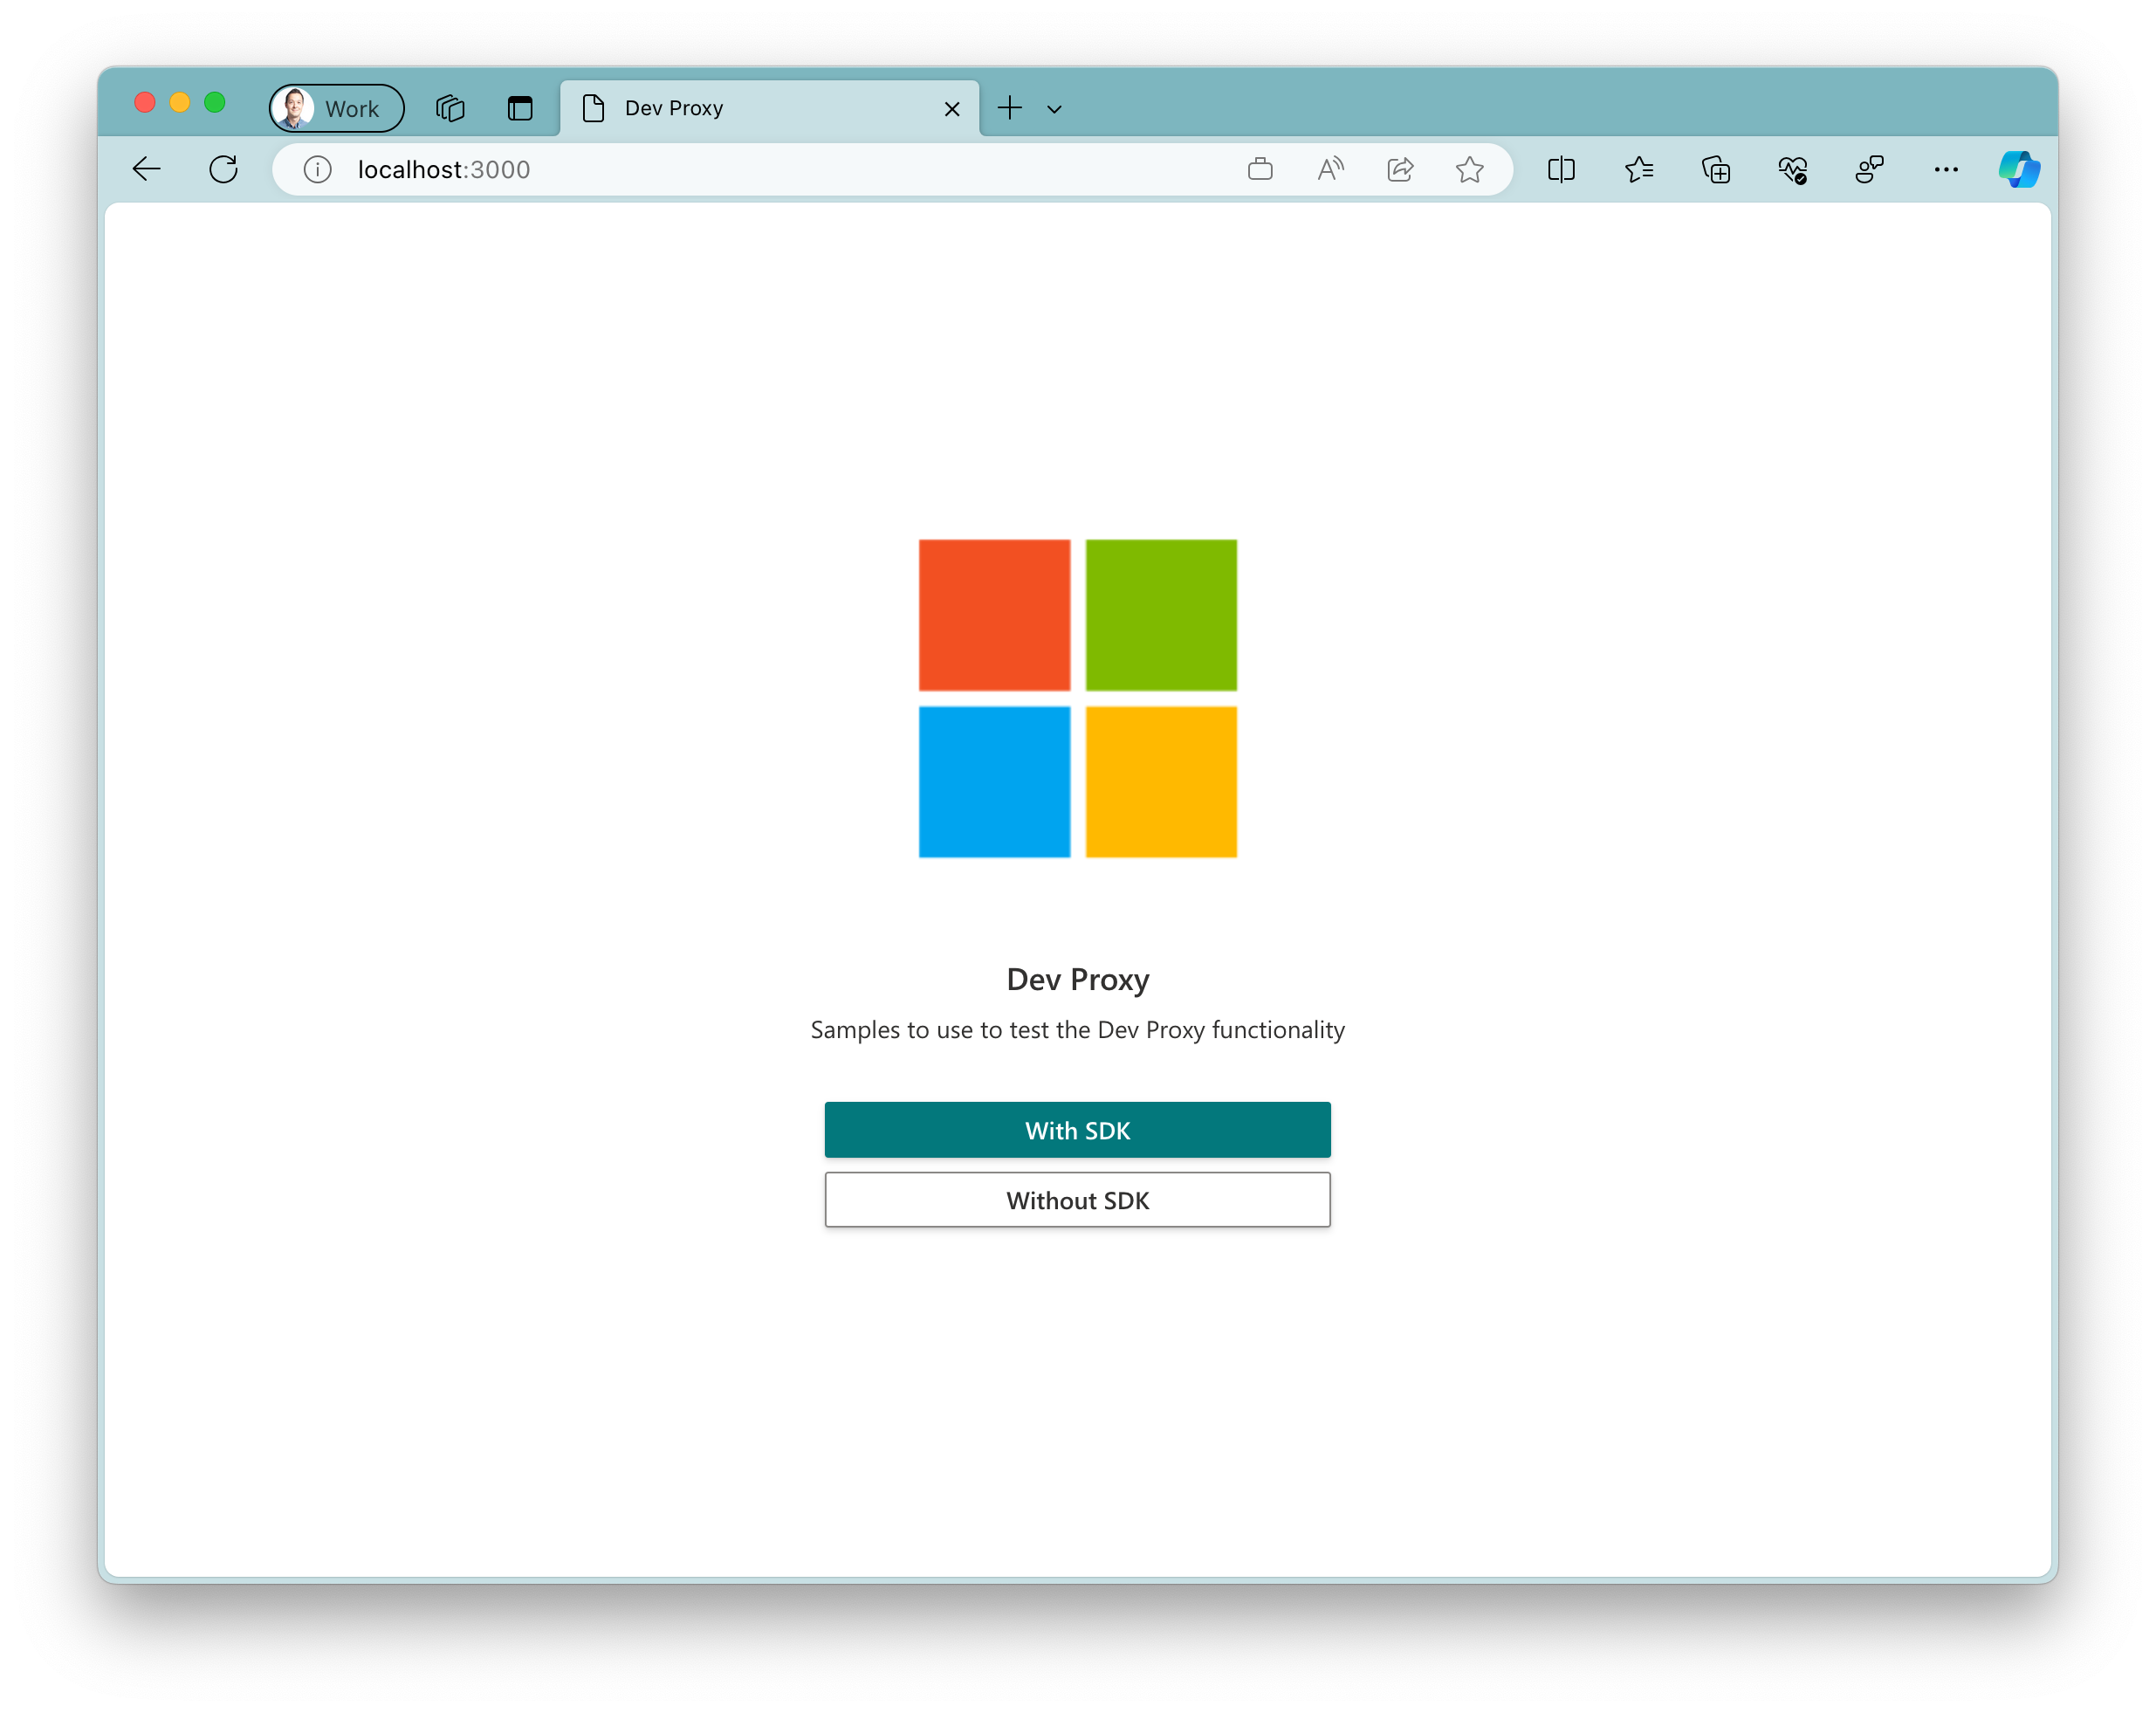 Captura de tela do aplicativo de exemplo em execução no navegador Microsoft Edge no macOS. O aplicativo mostra um logotipo grande da Microsoft com dois botões abaixo dele. Um botão primário com o texto 